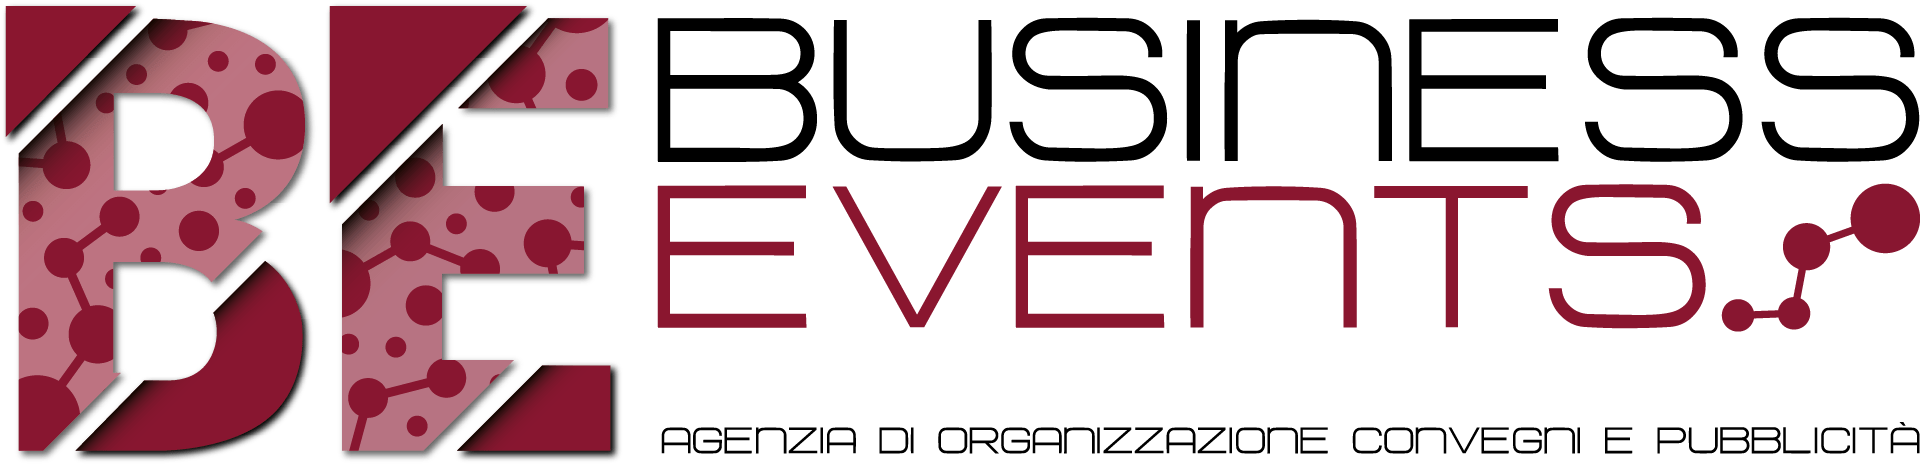 Business Events - Agenzia pubblicitaria